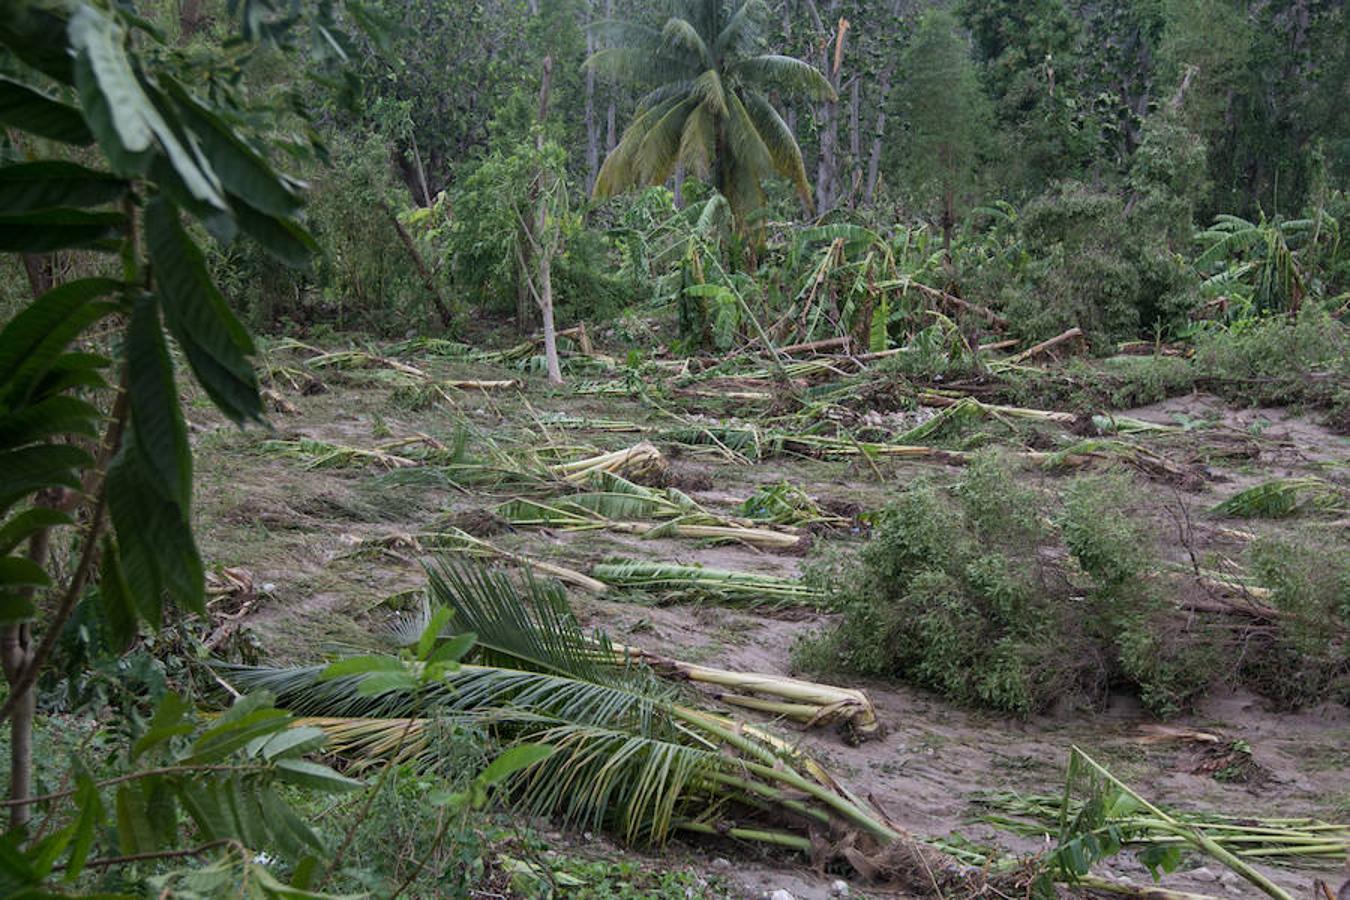 Muchas comunidades han quedado incomunicadas, principalmente en el suroeste de la nación caribeña, tras el paso del huracán